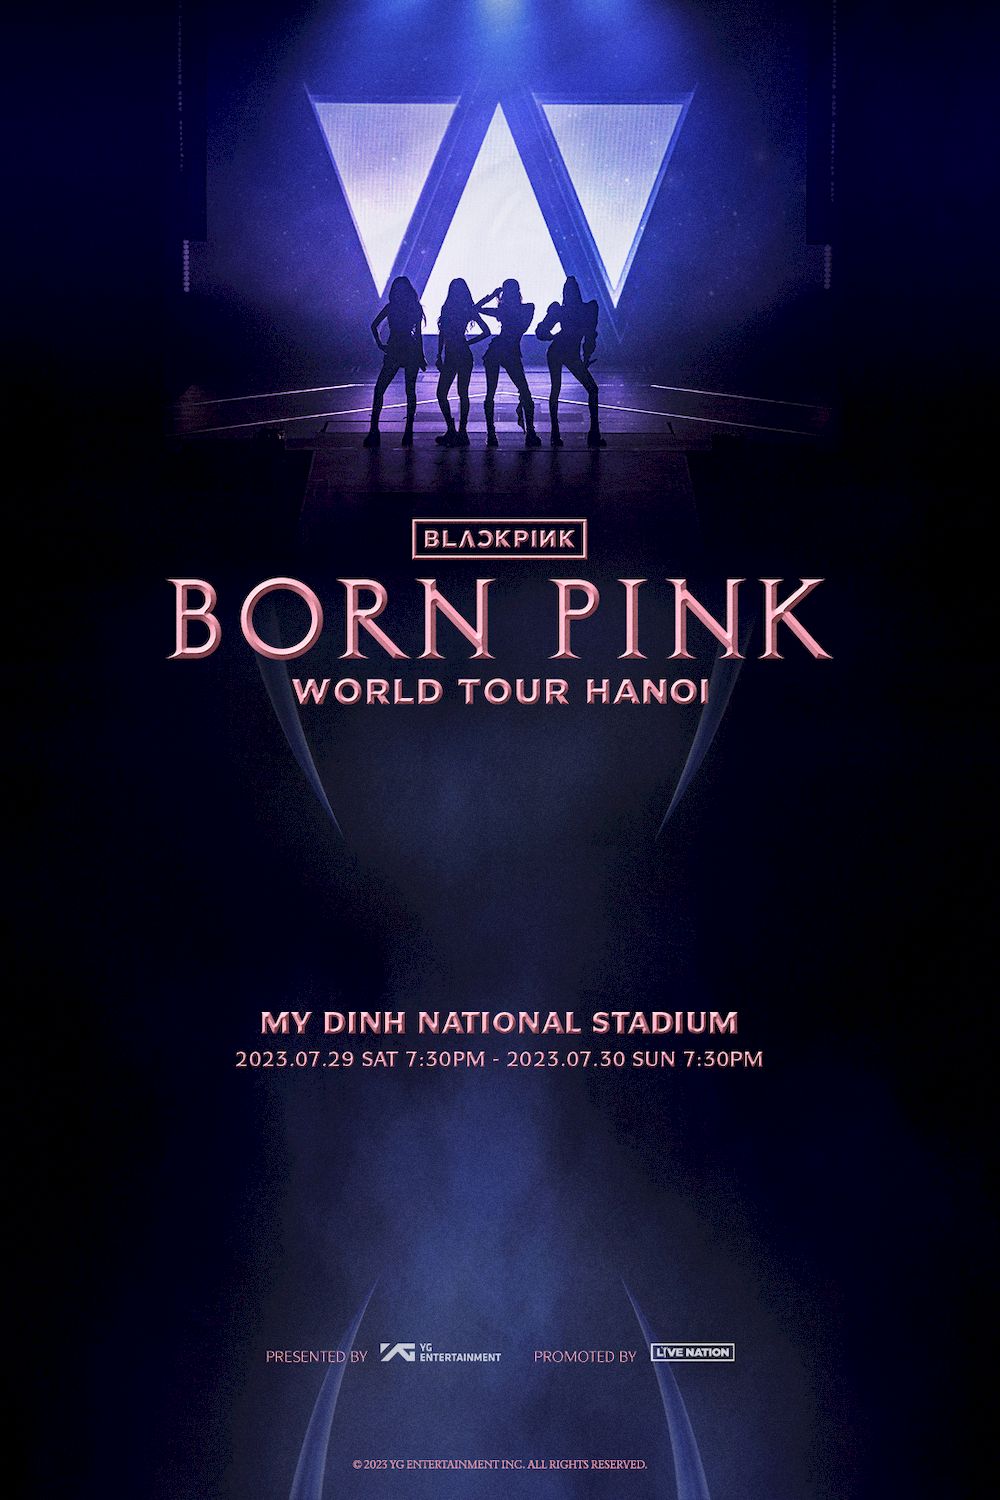 Poster thông báo BlackPink tổ chức concert "Born Pink World Tour" tại Việt Nam